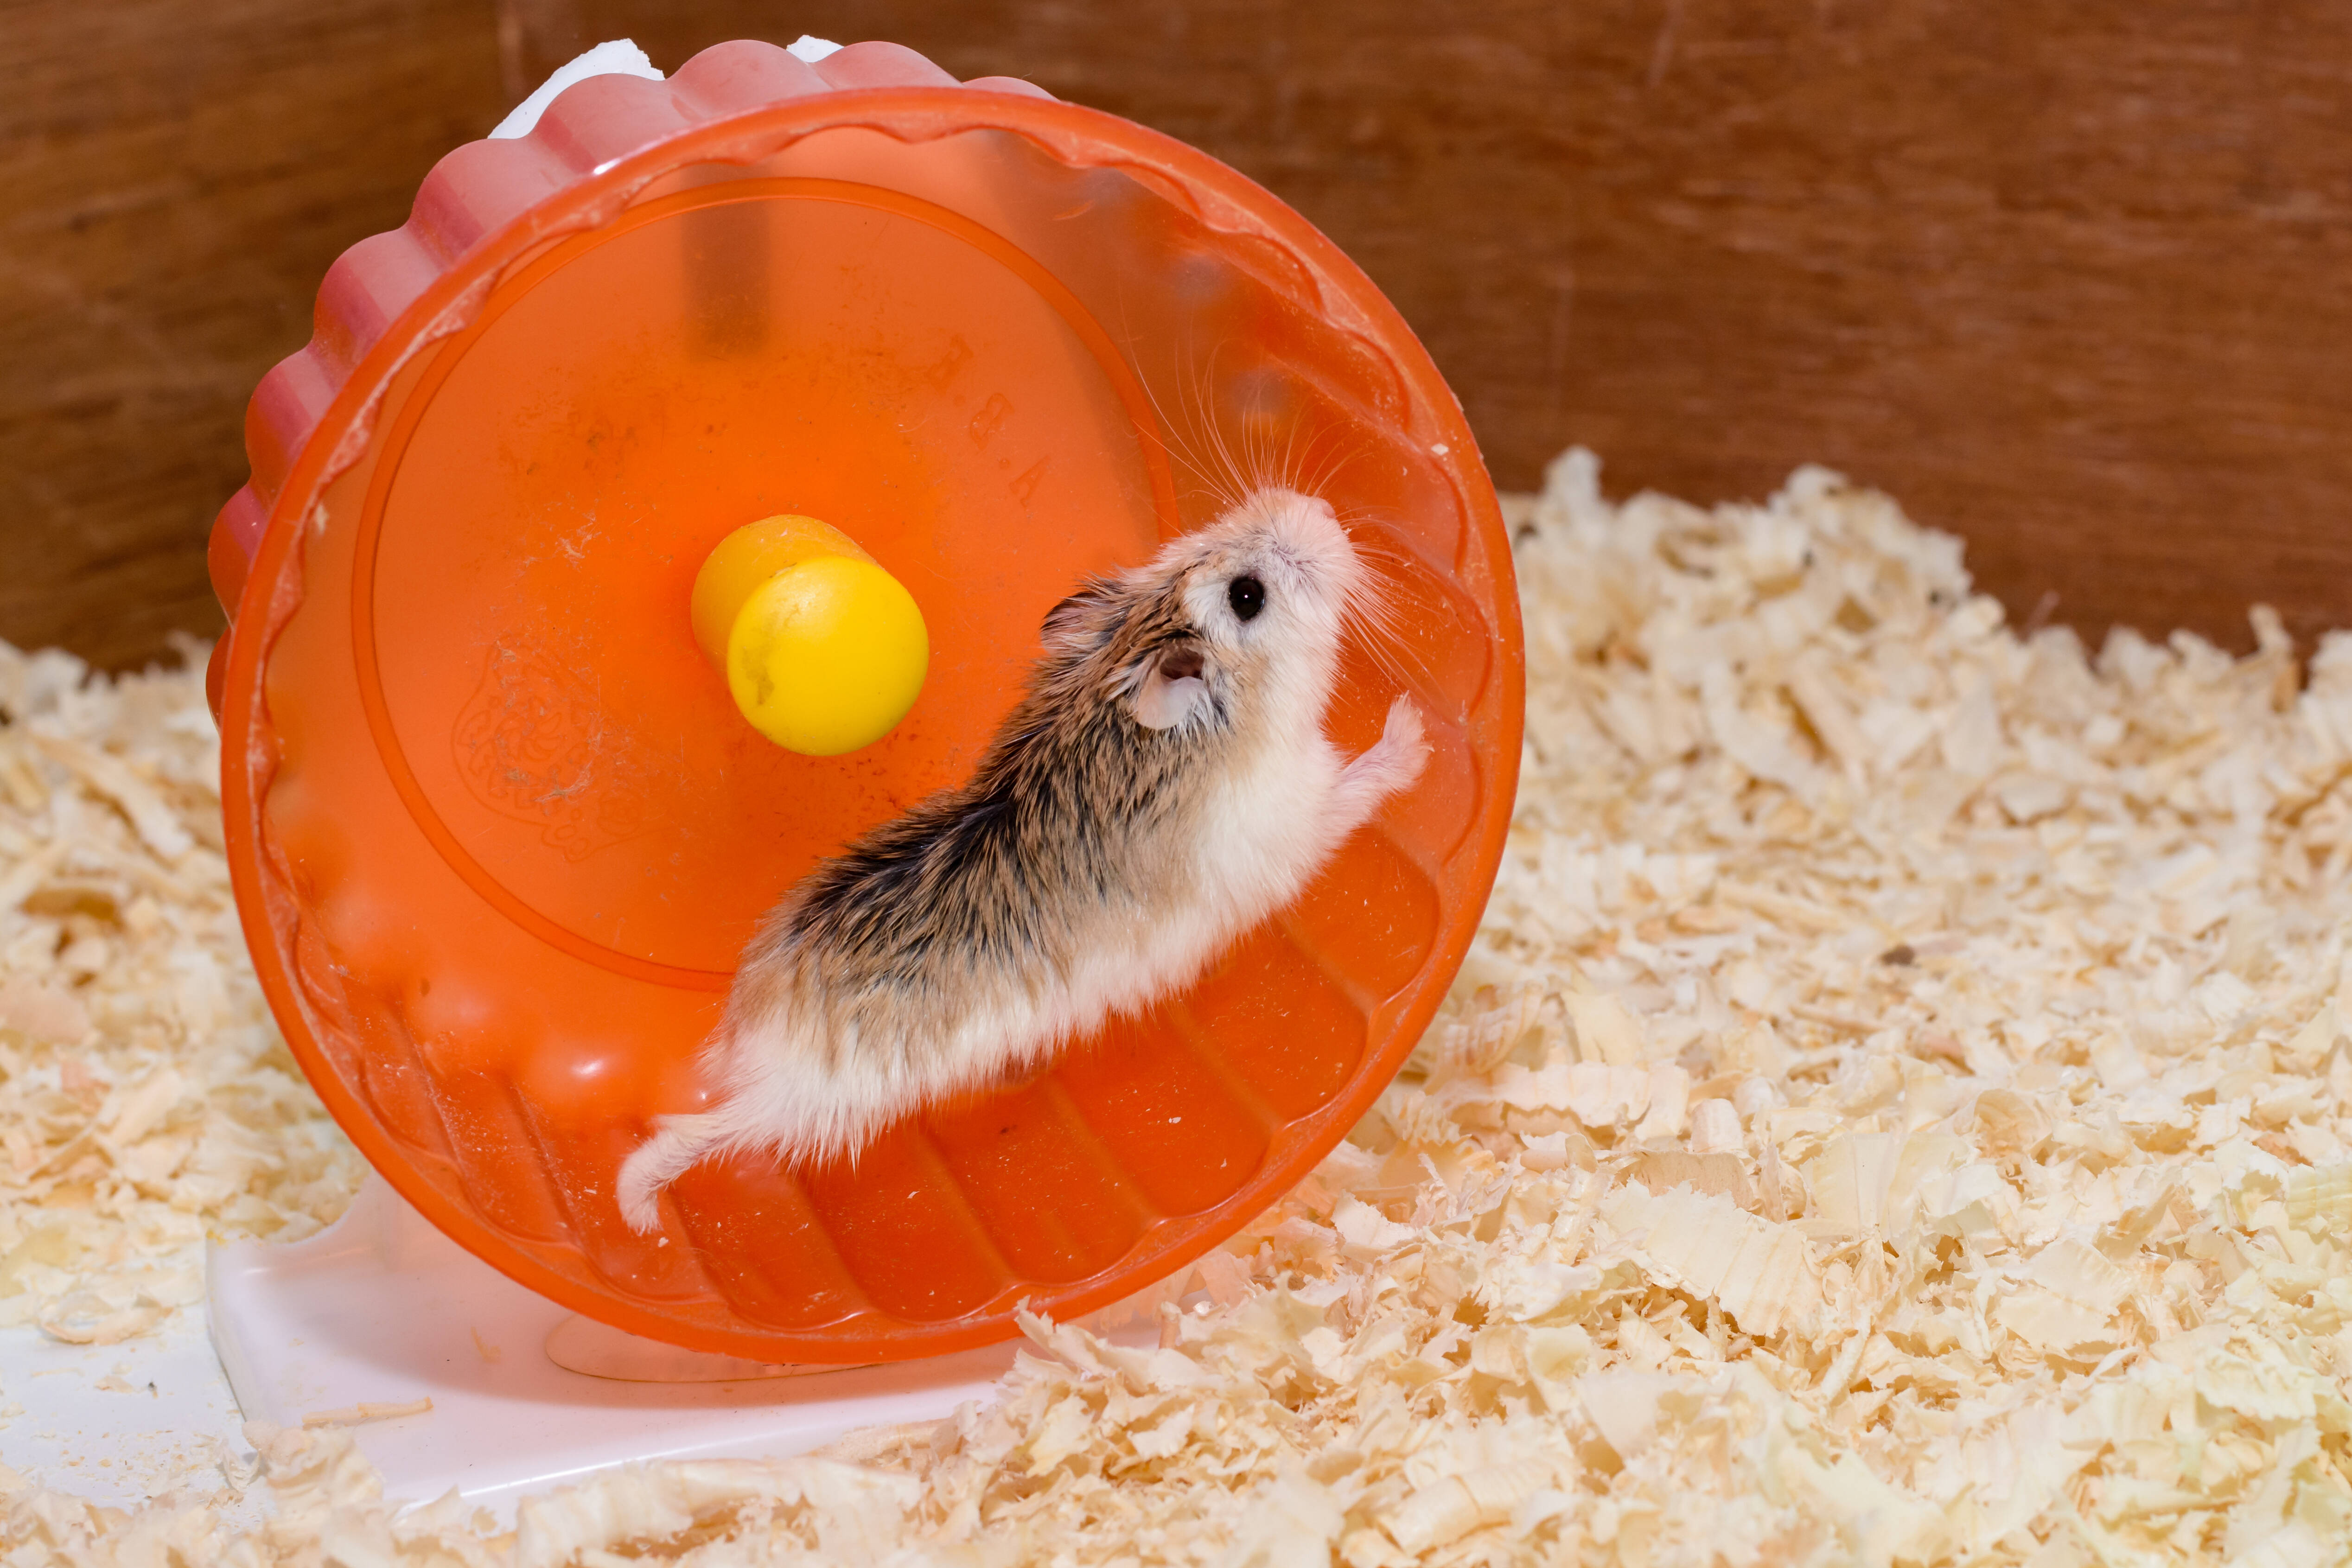 Instalar uma rodinha na gaiola é uma dos métodos mais tradicionais para o hamster se exercitar. Foto: reprodução shutterstock